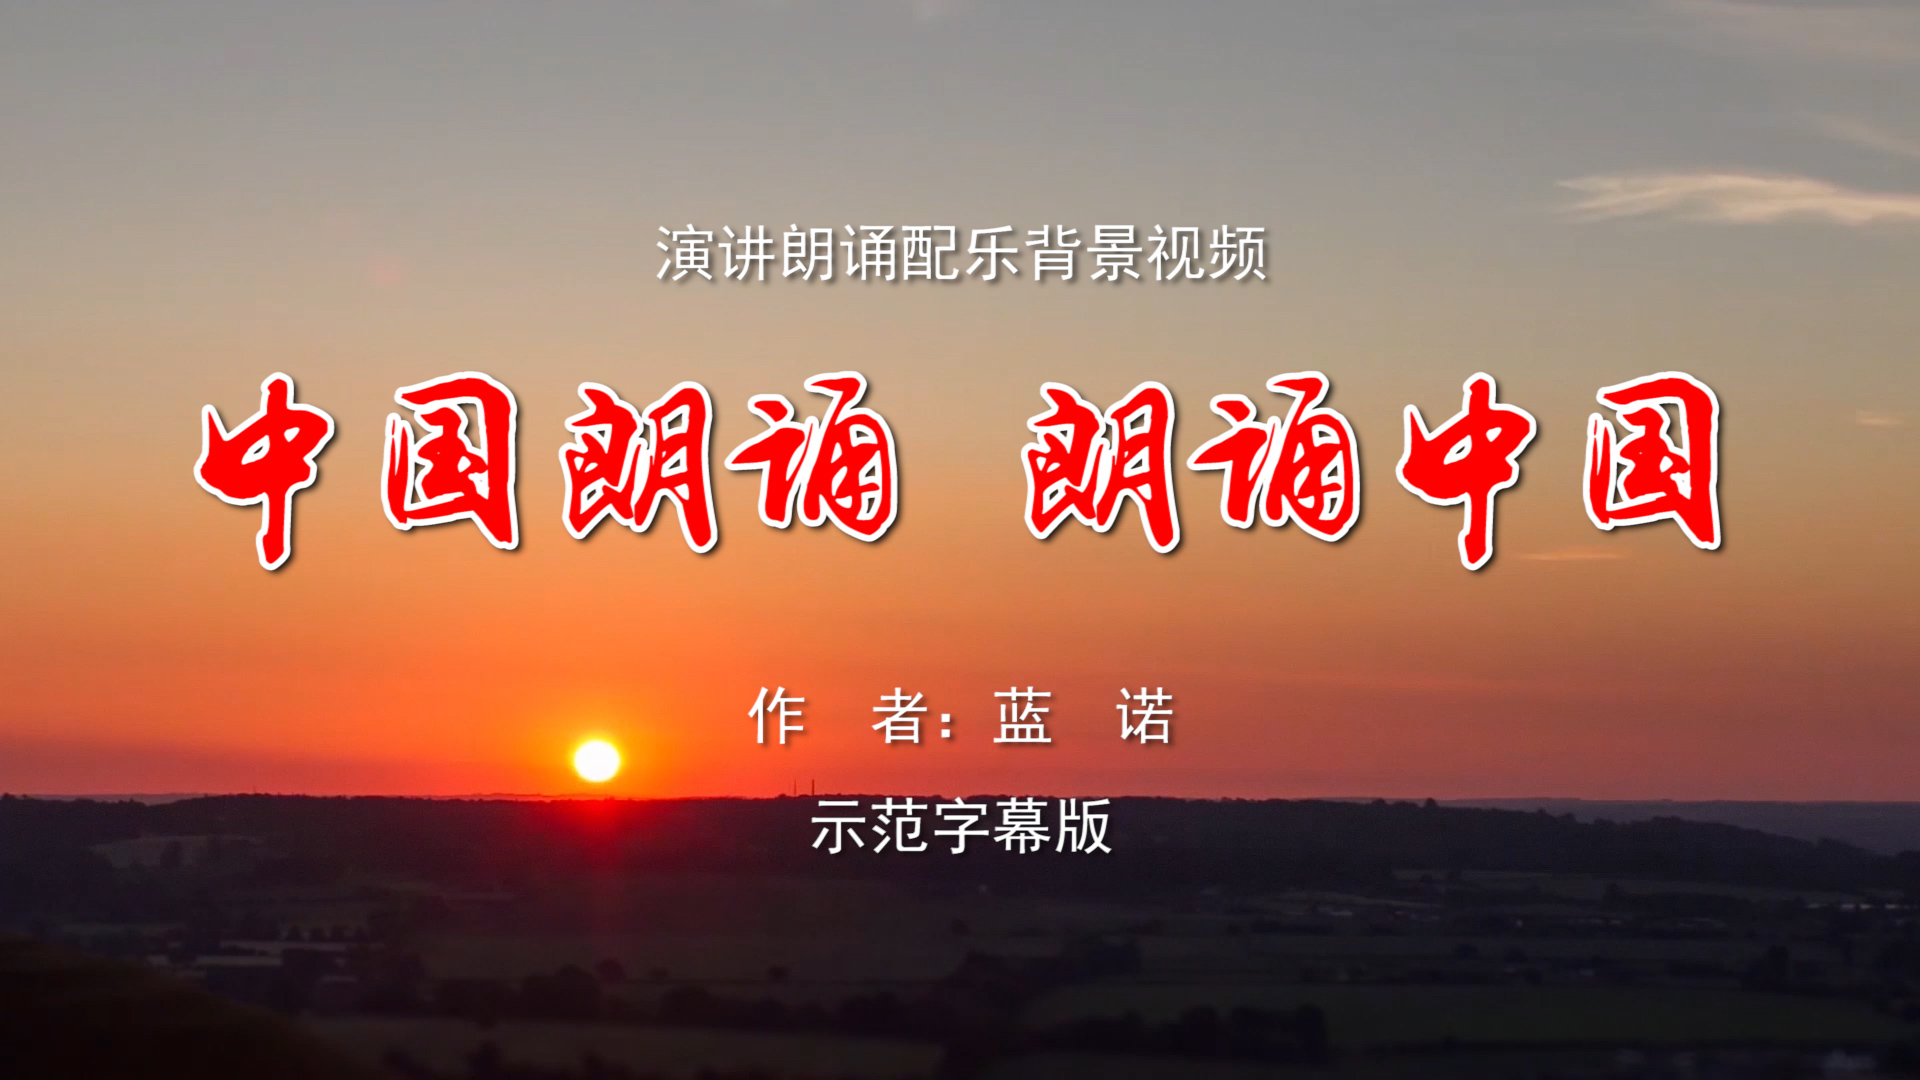 中国朗诵朗诵中国 诗歌朗诵配乐伴奏舞台演出LED背景大屏幕视频素材TV